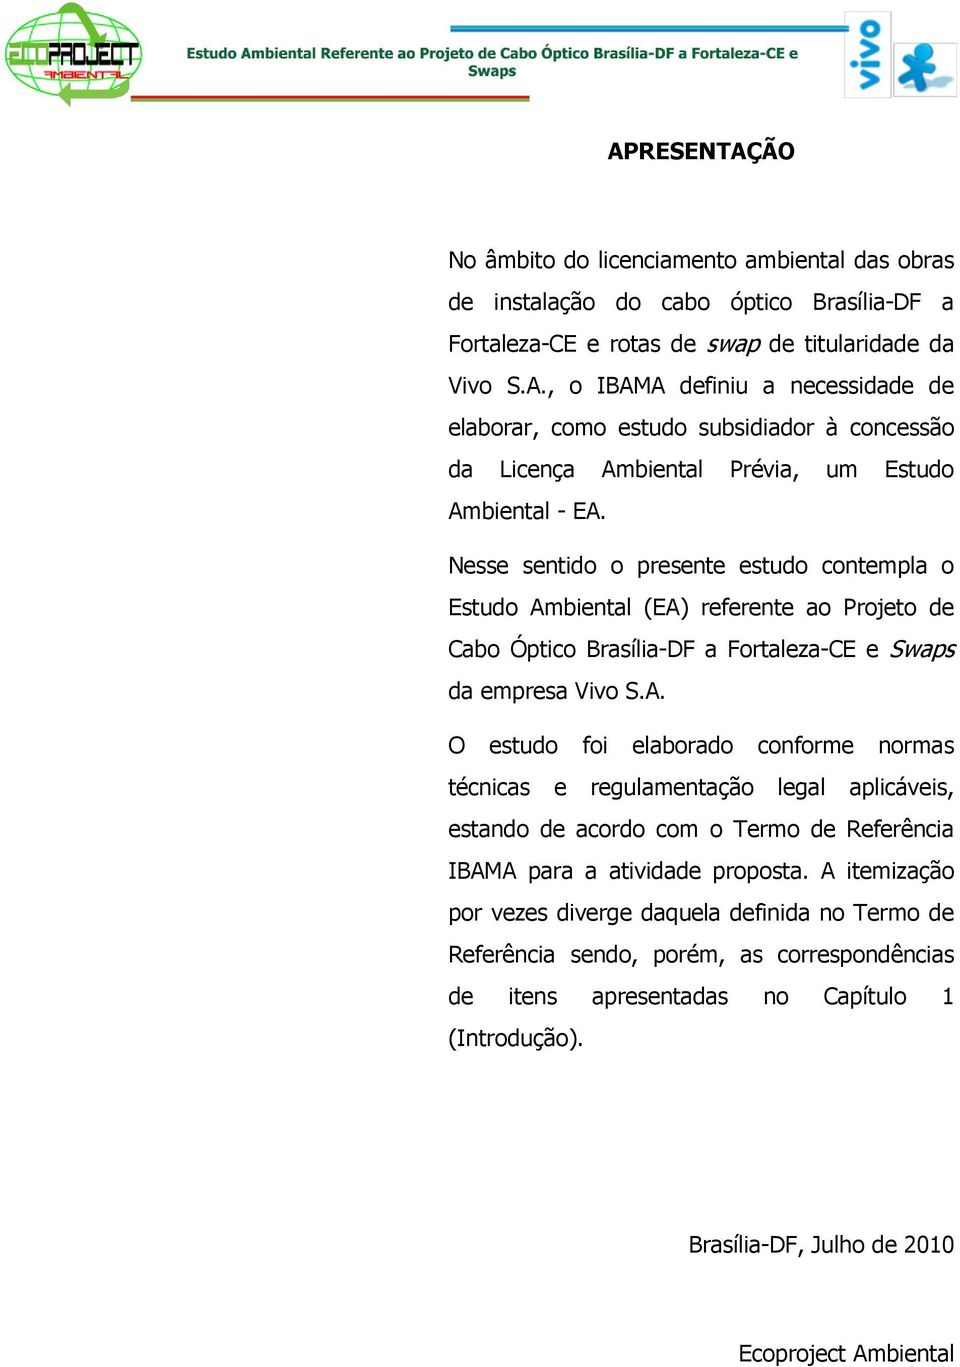 biental (EA) referente ao Projeto de Cabo Óptico Brasília-DF a Fortaleza-CE e Swaps da empresa Vivo S.A. O estudo foi elaborado conforme normas técnicas e regulamentação legal aplicáveis, estando de acordo com o Termo de Referência IBAMA para a atividade proposta.